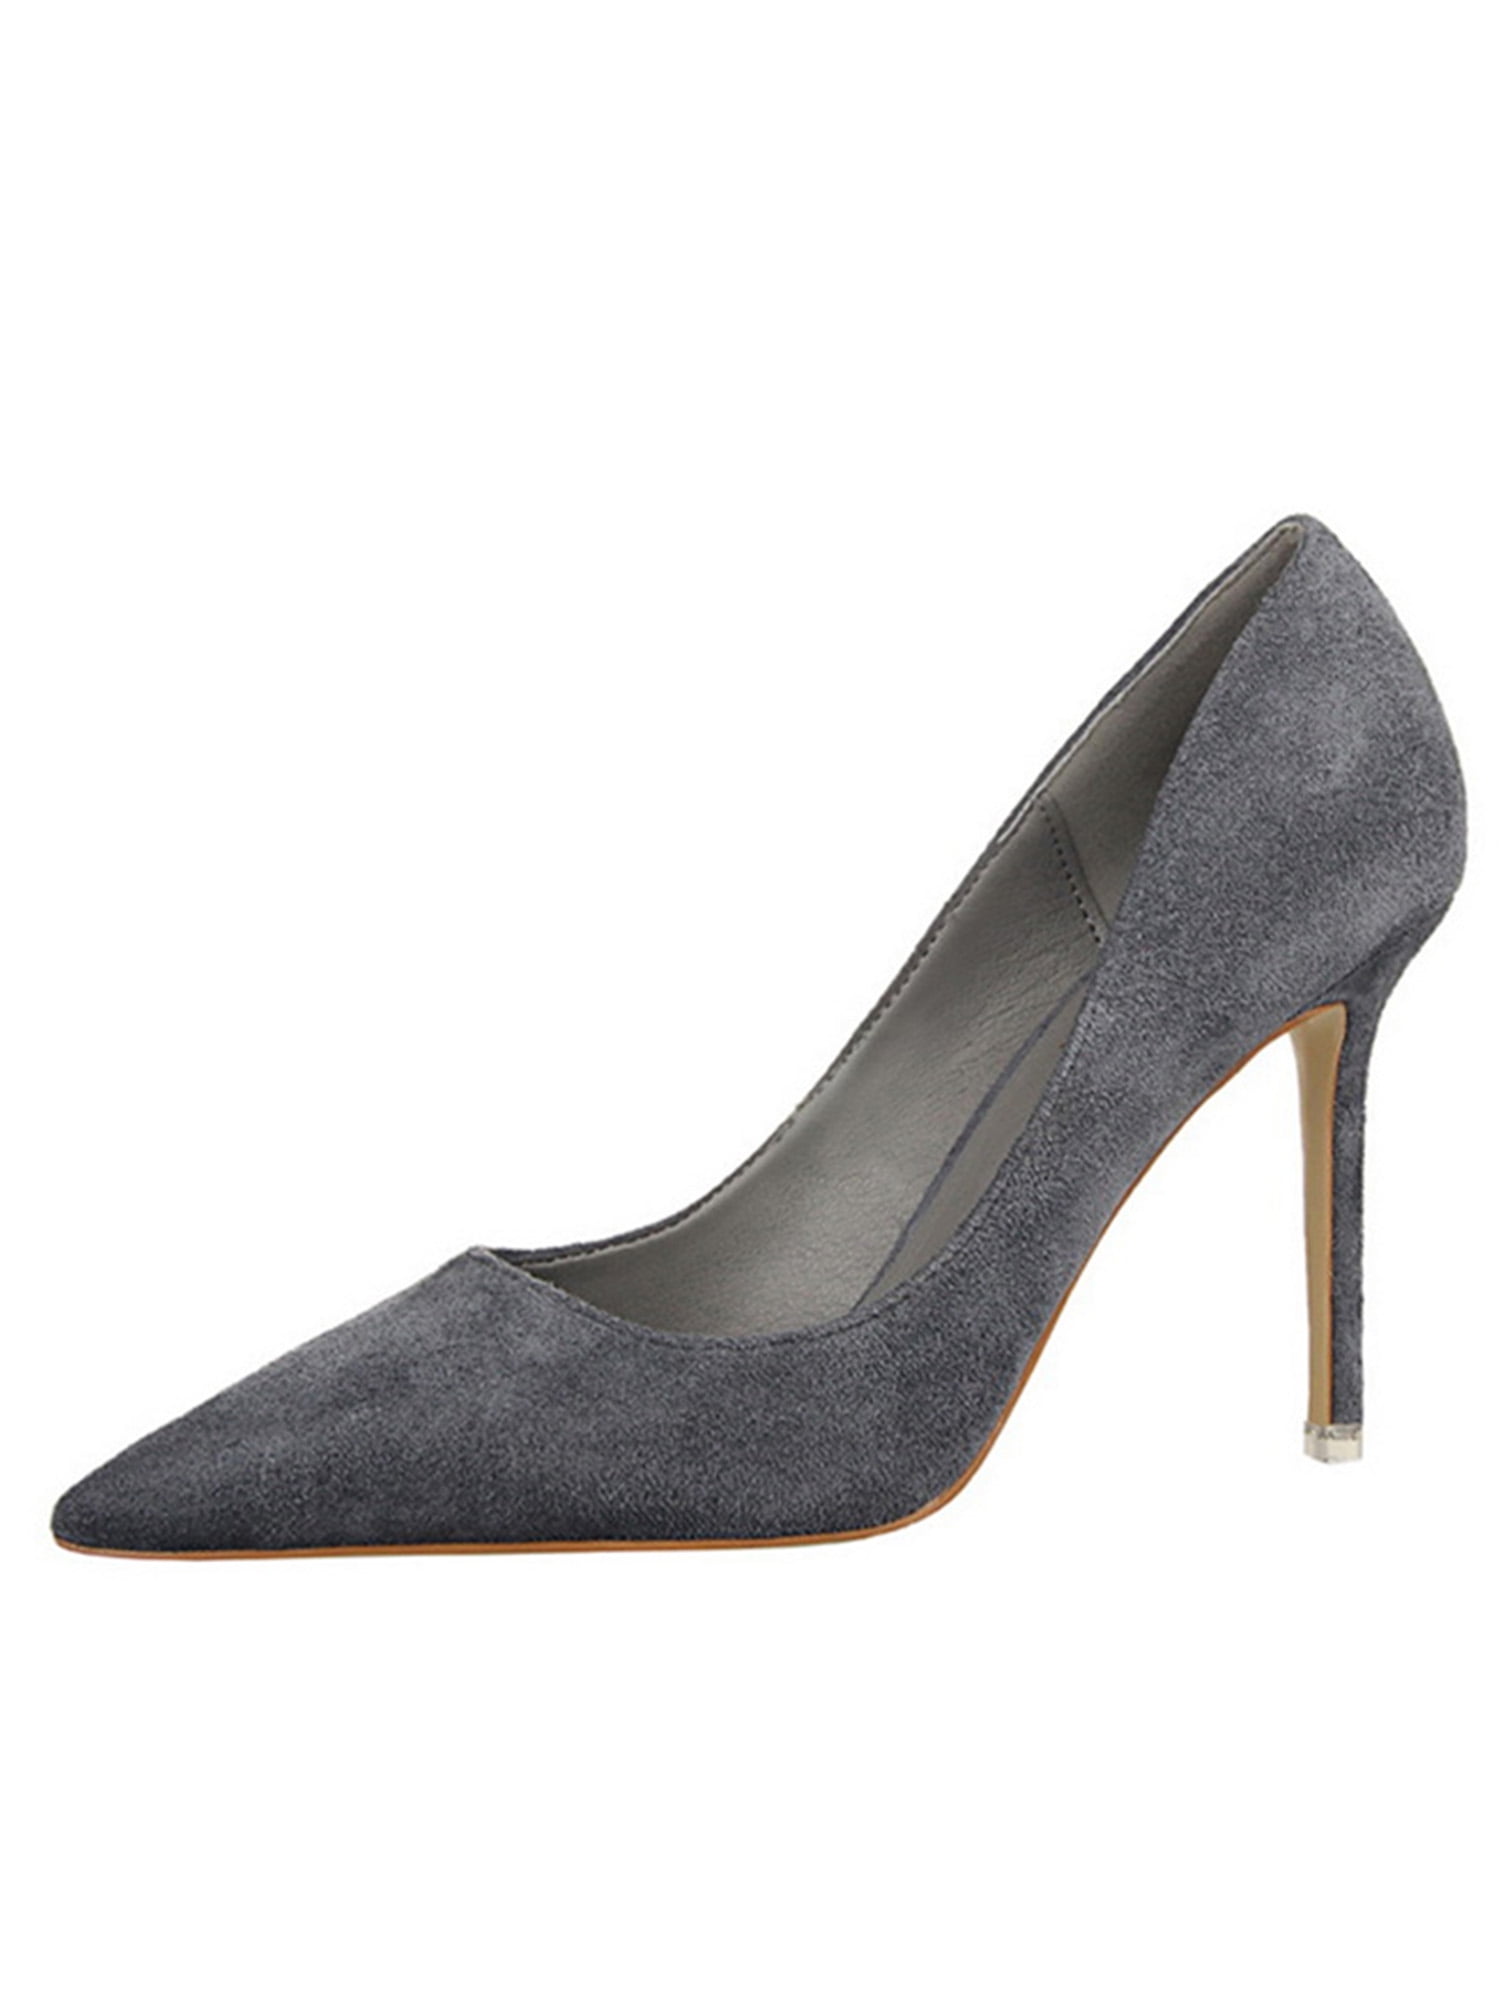 Gray Oxford Heels - Aldgate by Julia Bo | Women's Oxfords & Boots - Julia  Bo - Women's Oxfords